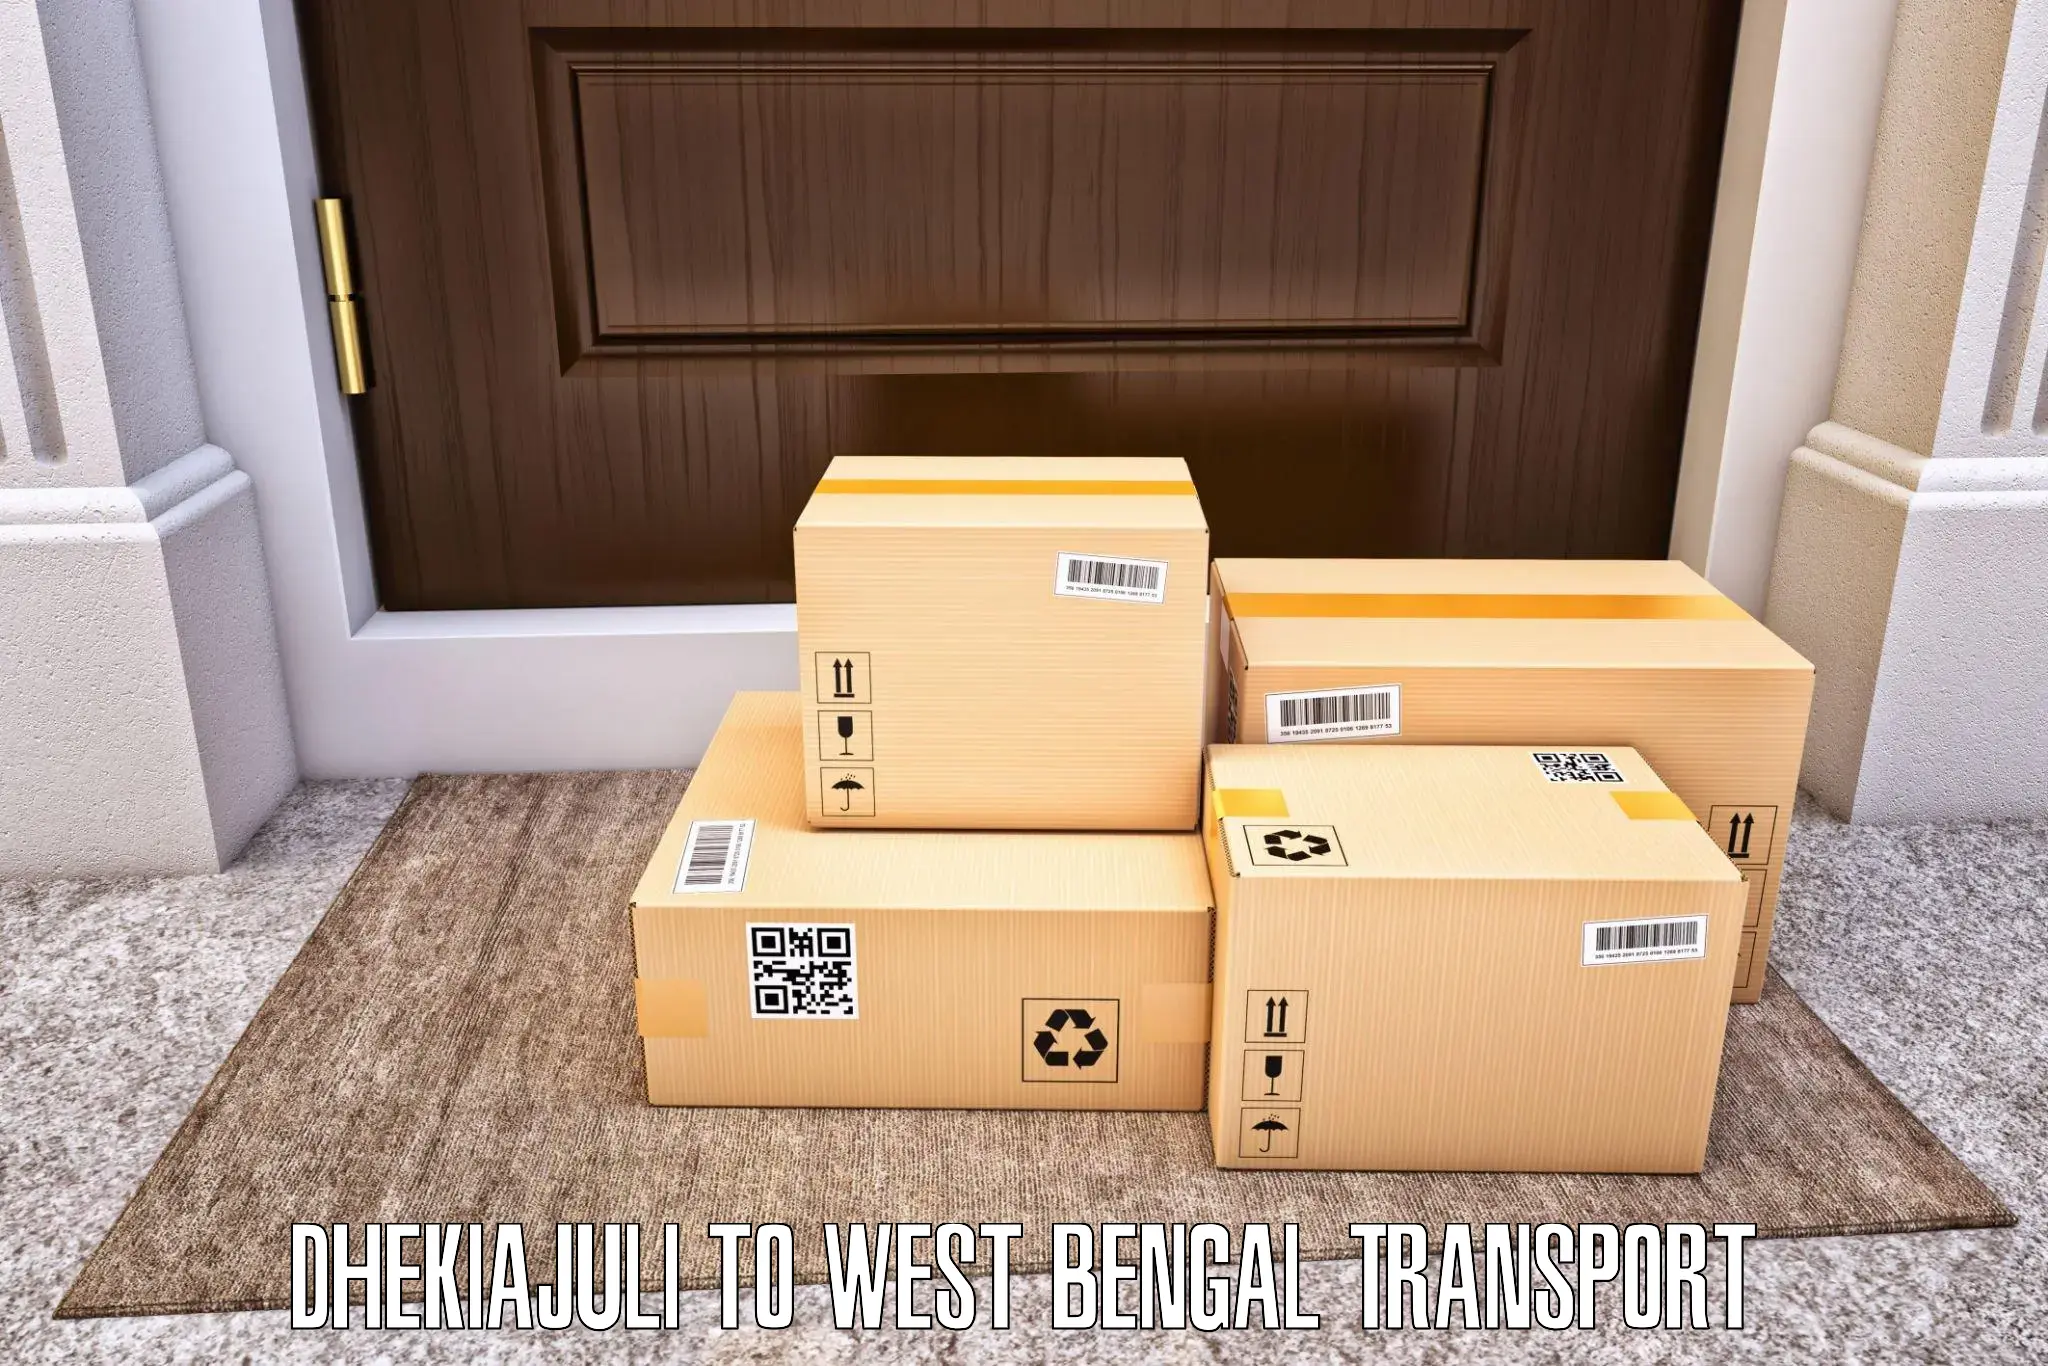 Air freight transport services in Dhekiajuli to Lataguri